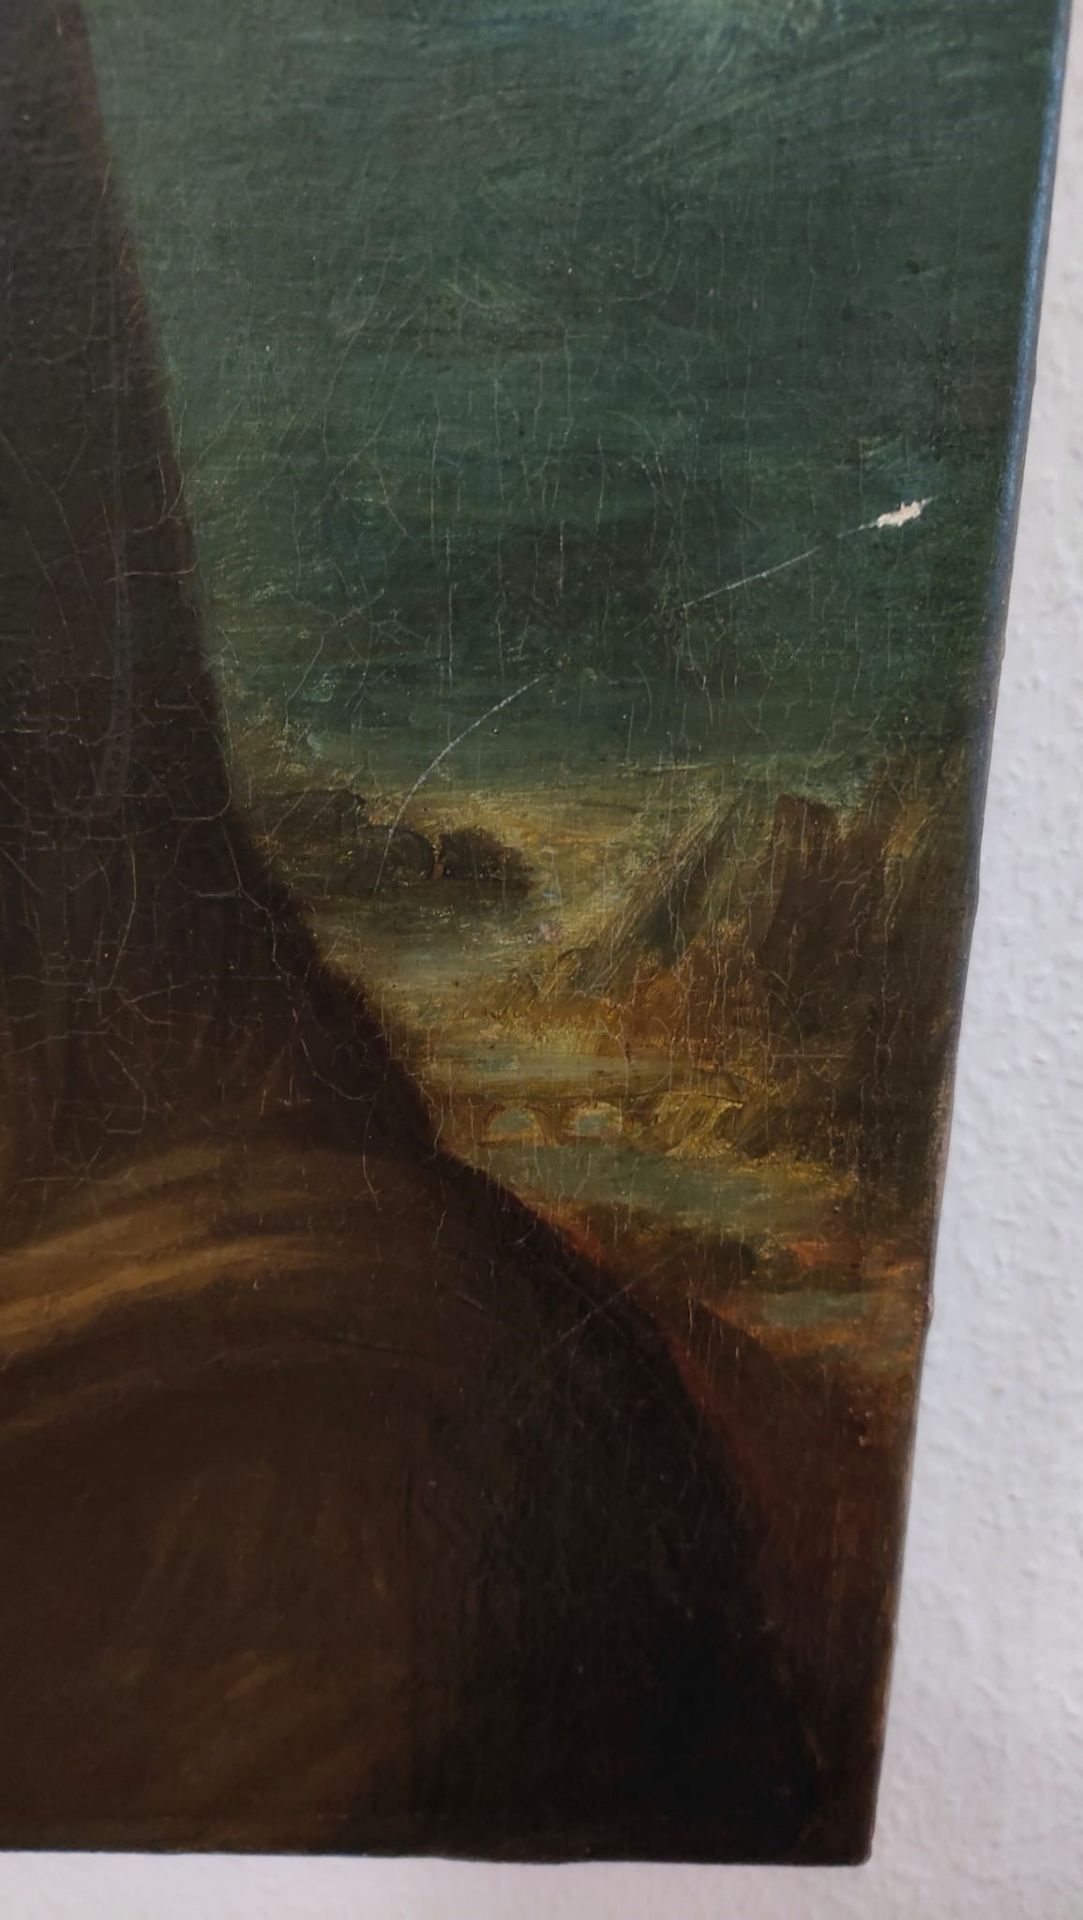 UNBEKANNT "Mona-Lisa-Kopie", 19. Jh., Öl auf Leinwand, 44x37,5cm, kl. Transportschaden - Bild 5 aus 5